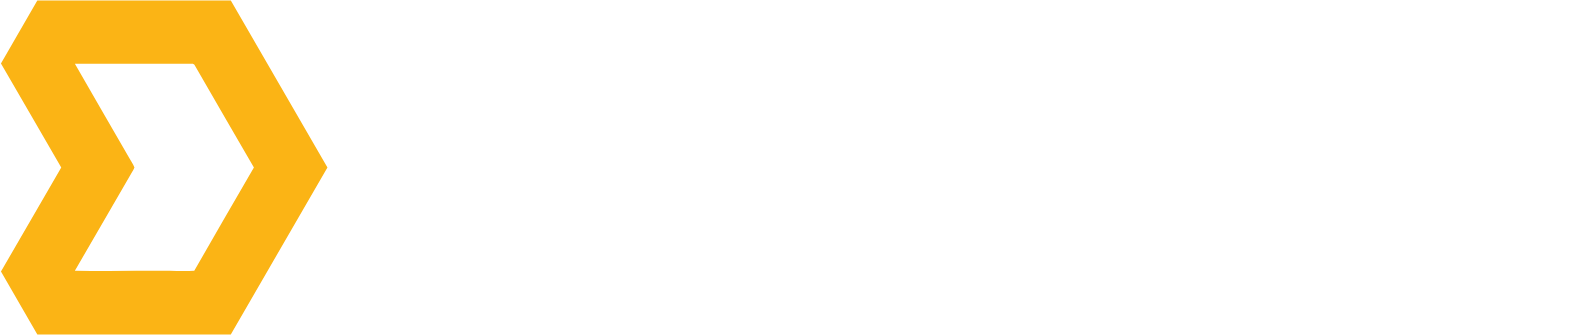 Direct Digital Holdings logo grand pour les fonds sombres (PNG transparent)